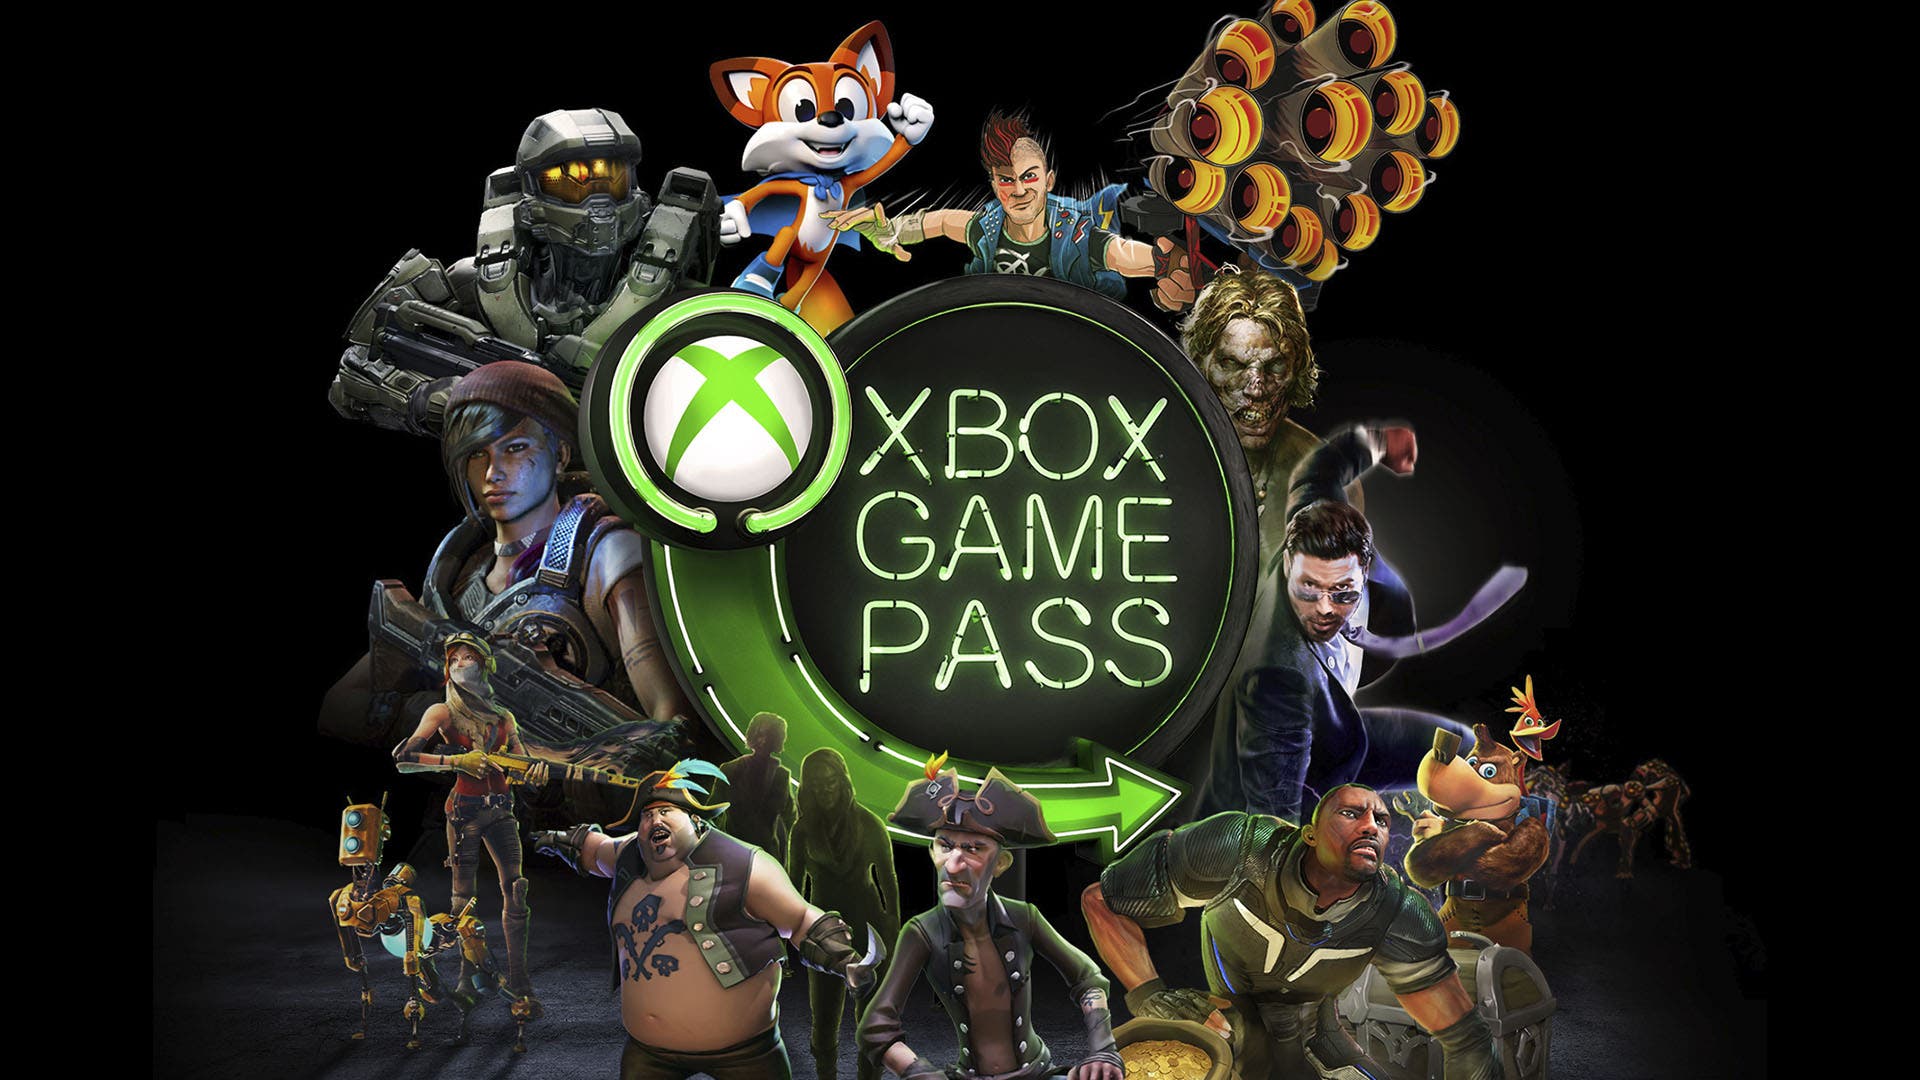 Em breve no Xbox Game Pass: F1 2021, Shredders, Weird West e mais